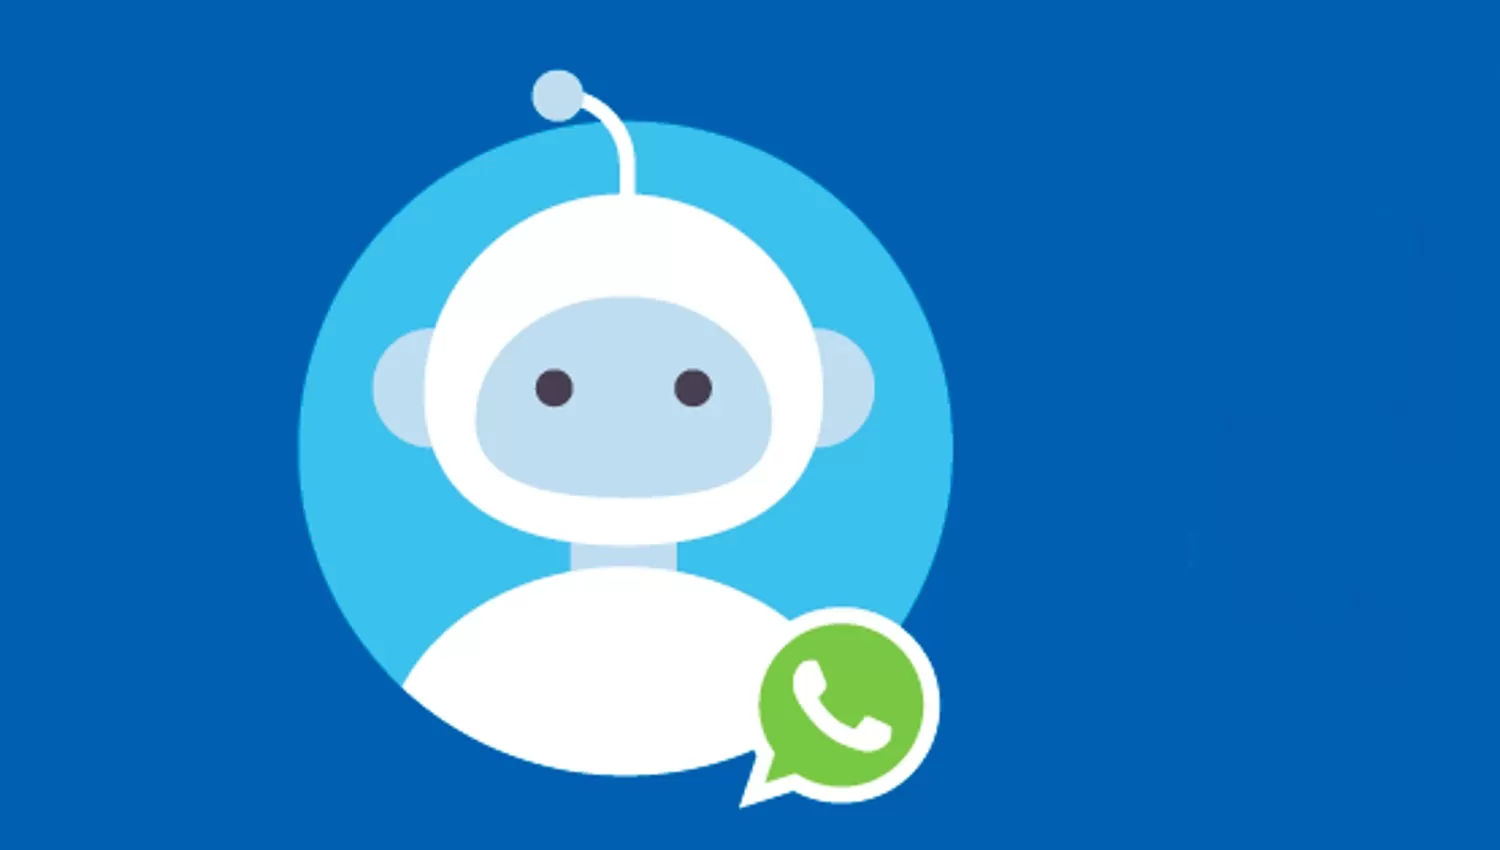 CHATBOT. La herramienta para responder dudas sobre las elecciones está disponible para el servicio de mensajería WhatsApp.